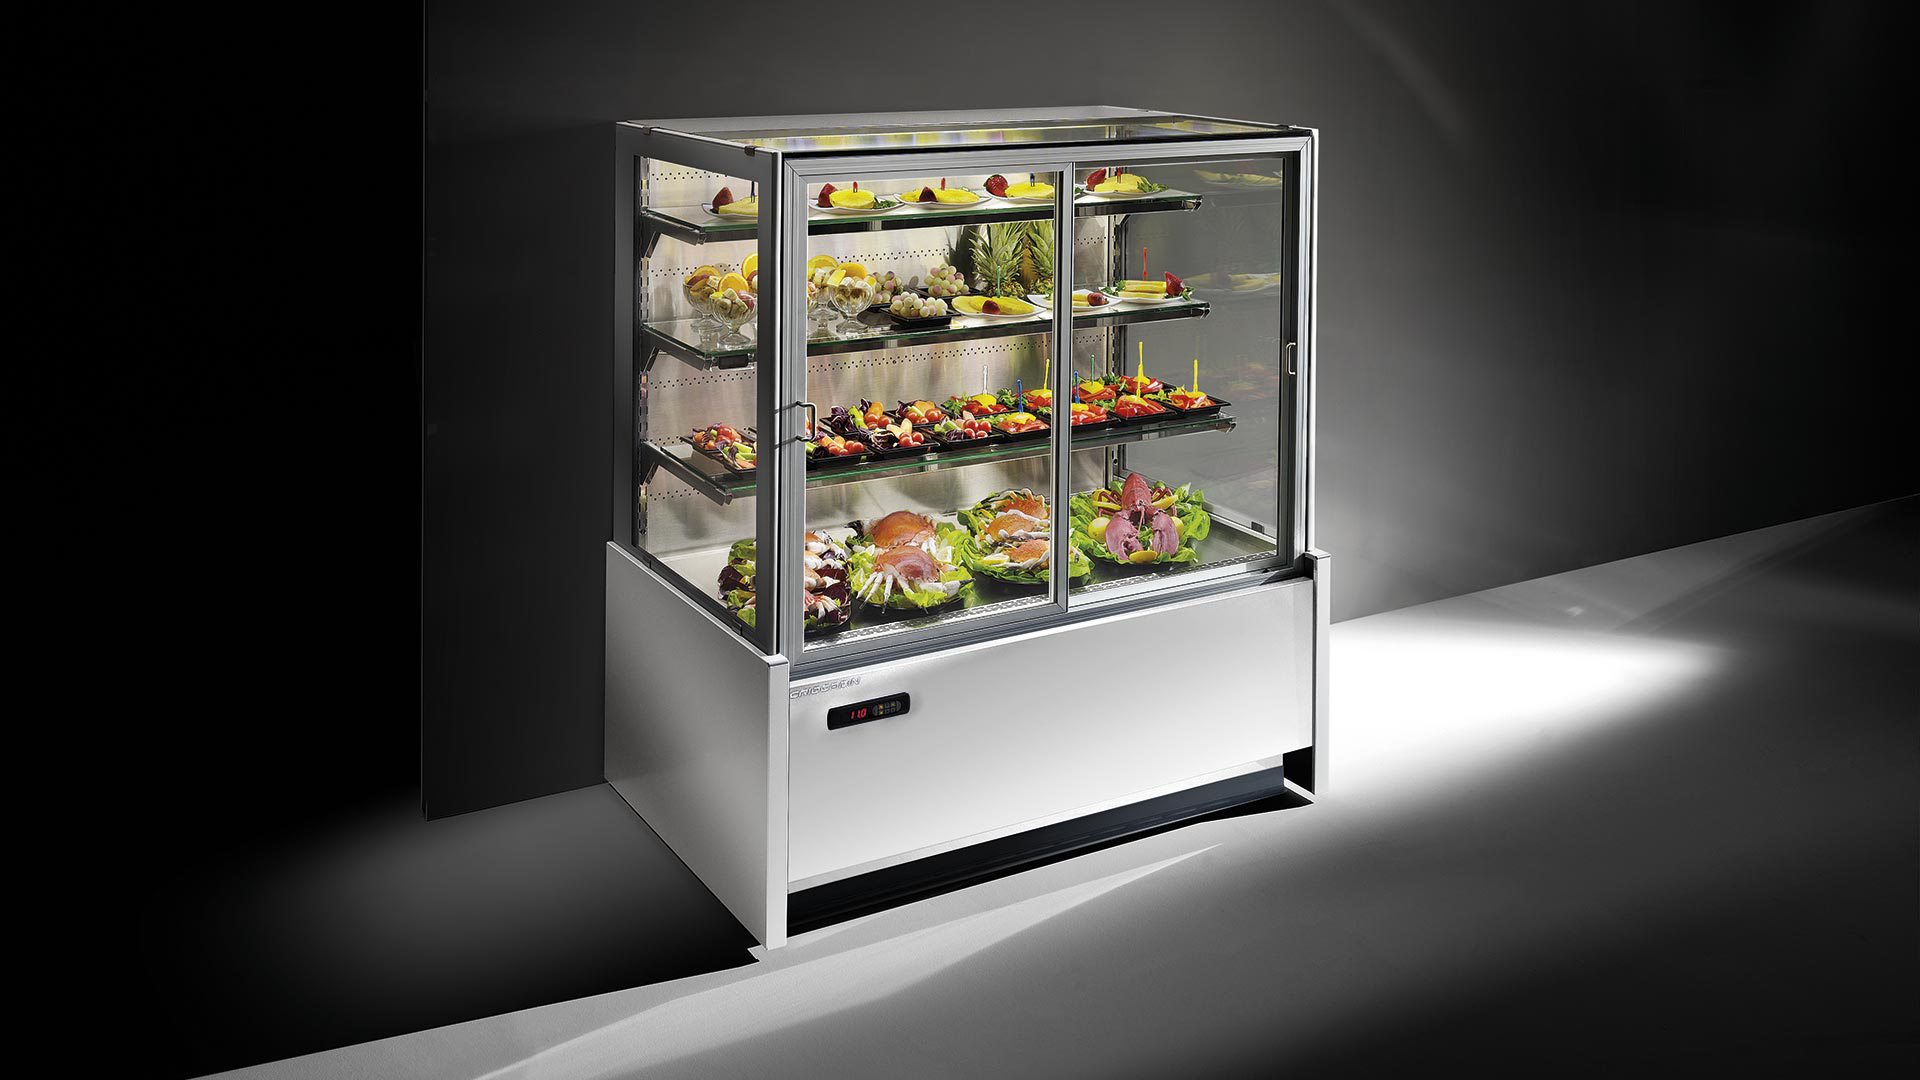 Рабочий витрина. Холодильные витрина модель Parmida esf201. MVF 328001 холодильный терминал вращающаяся витрина. Холодильная витрина для сэндвичей CTST 1200. Витрина холодильная Elisir 340.